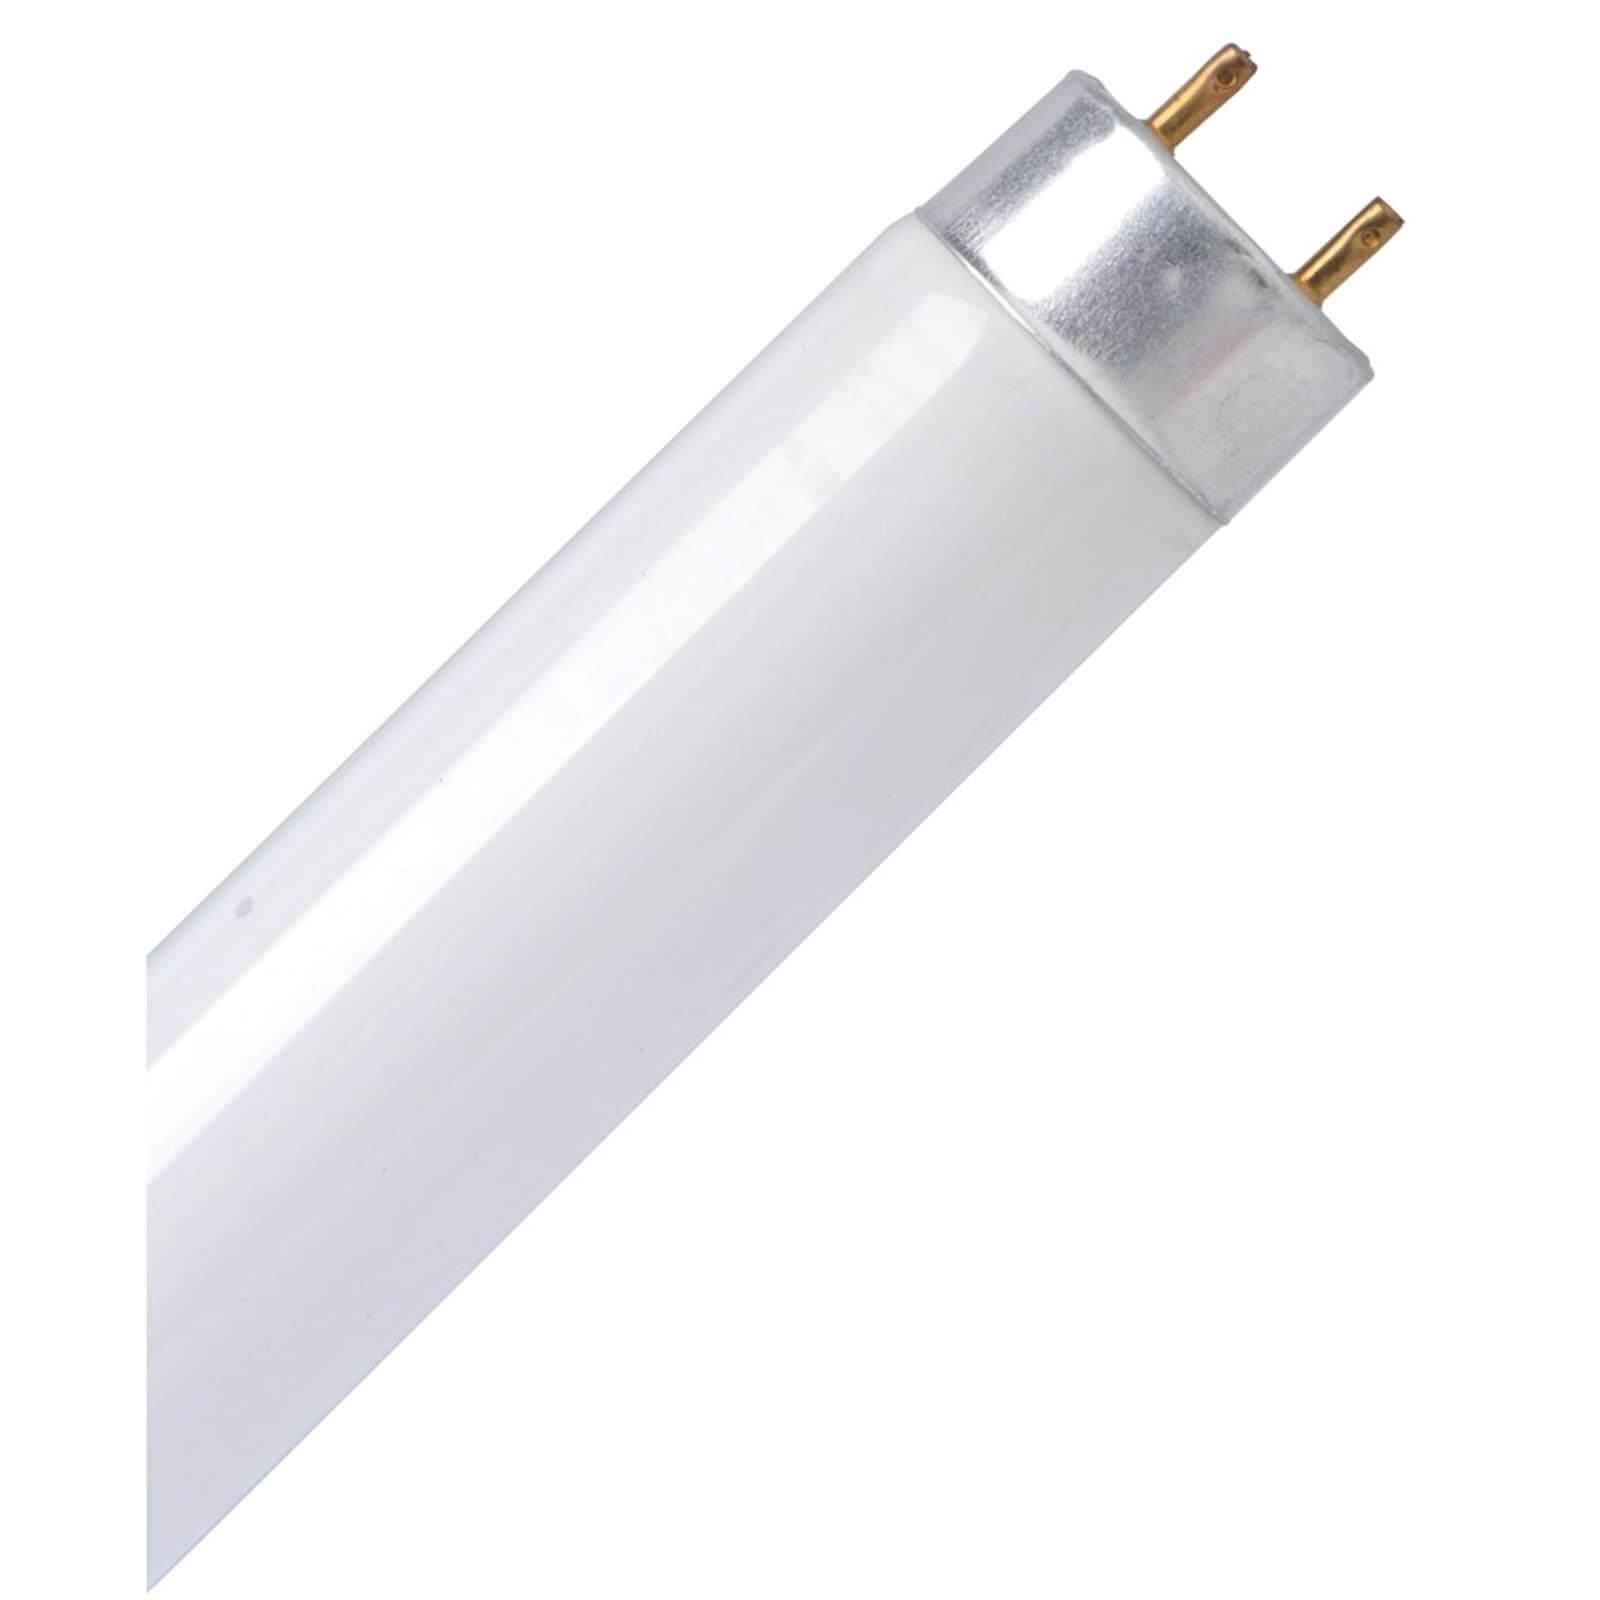 Energy Saver (CFL) Tube Cool White 0.9 30W Light Bulb